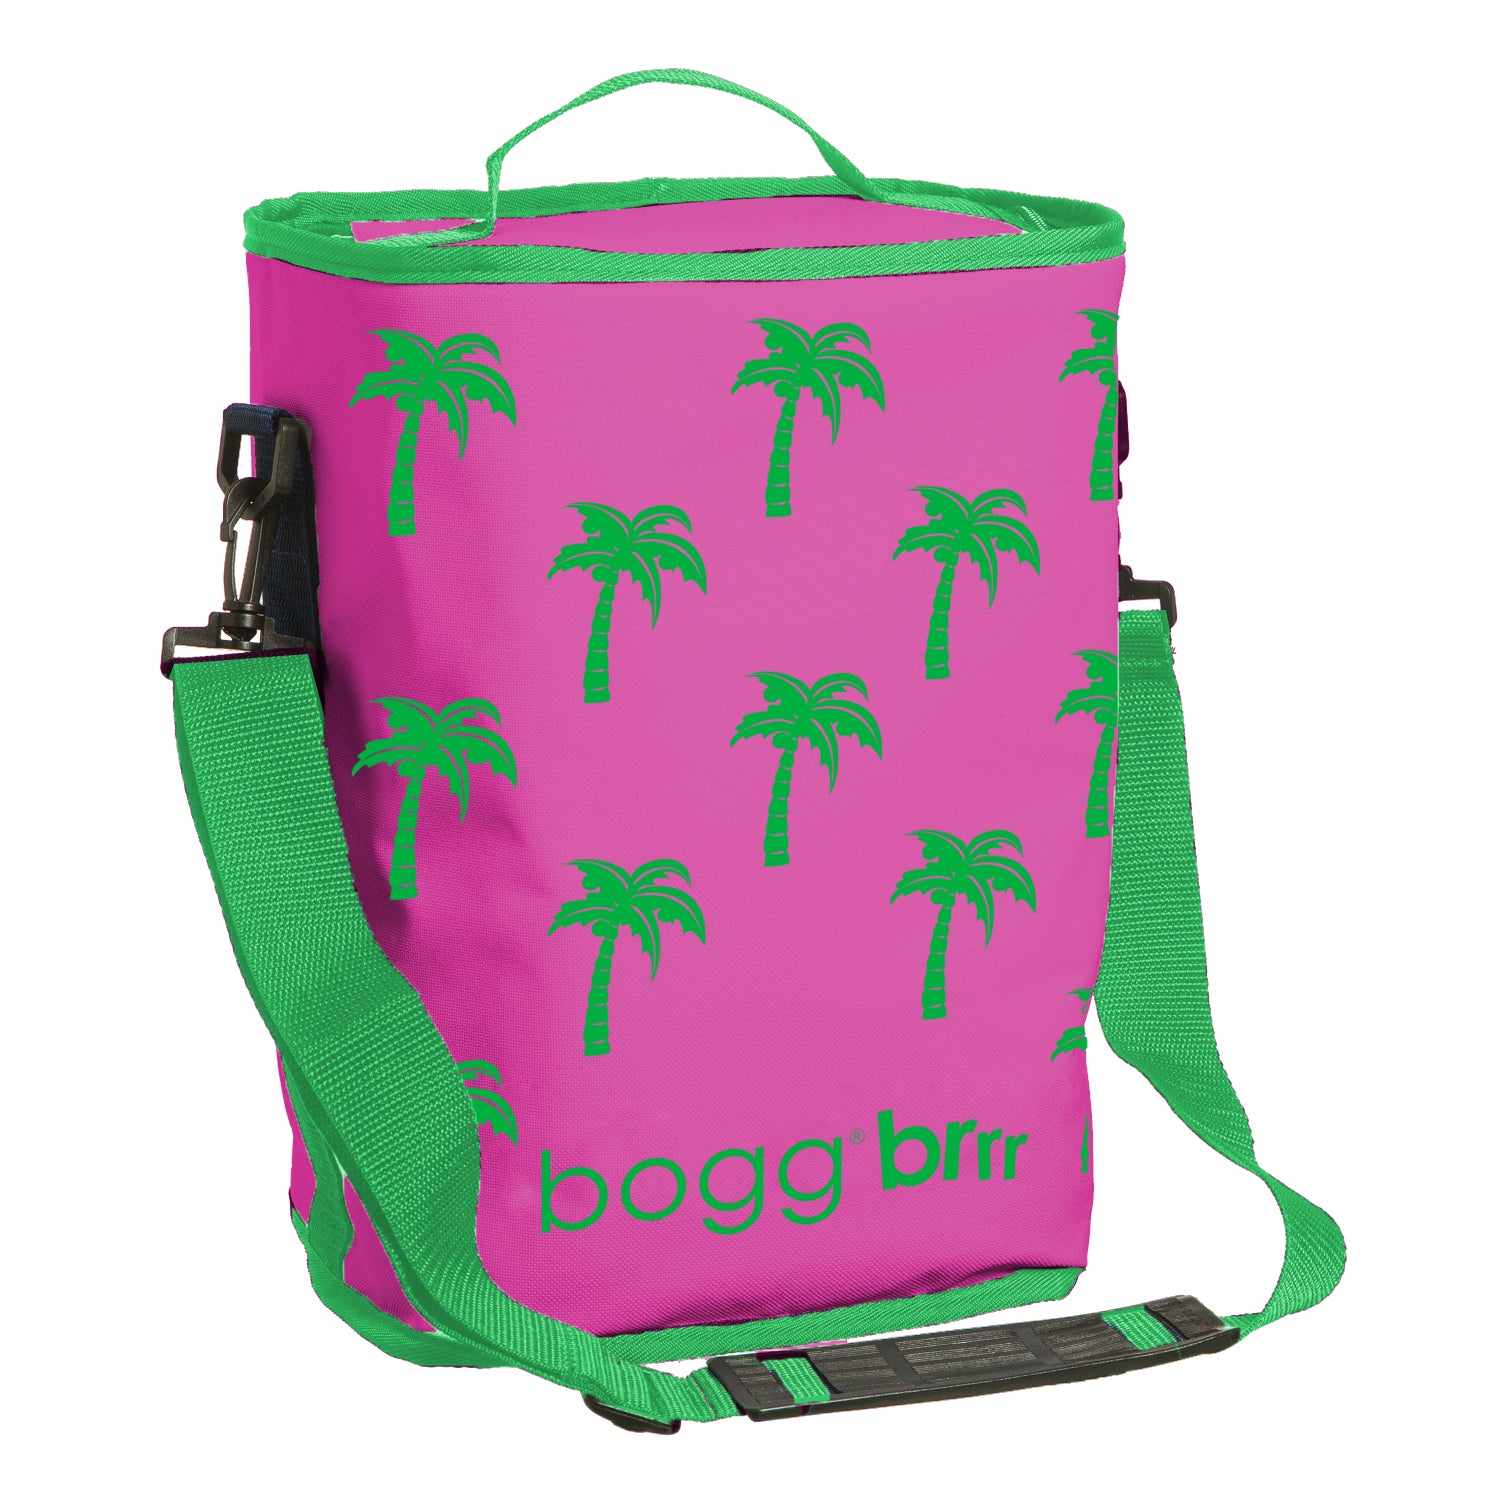 Bogg Bag Brrr Cooler Inserts, Brrr and A Half / Palm